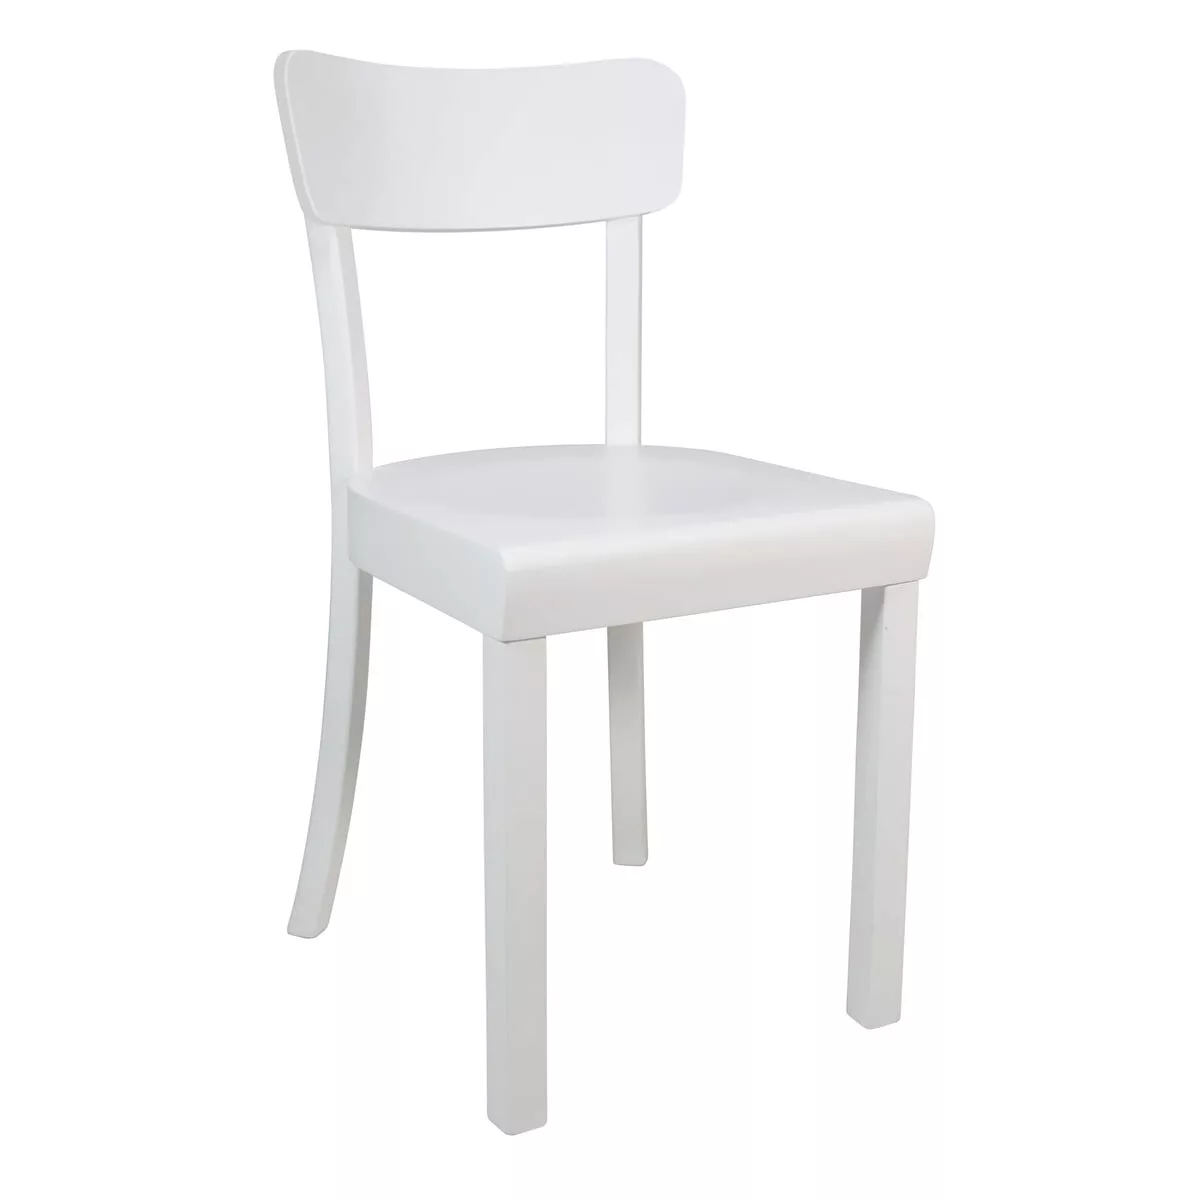 Yunic - Frankfurter Stuhl 2.0 - Buche weiß/matt lackiert/BxHxT 44x82x49cm/m günstig online kaufen